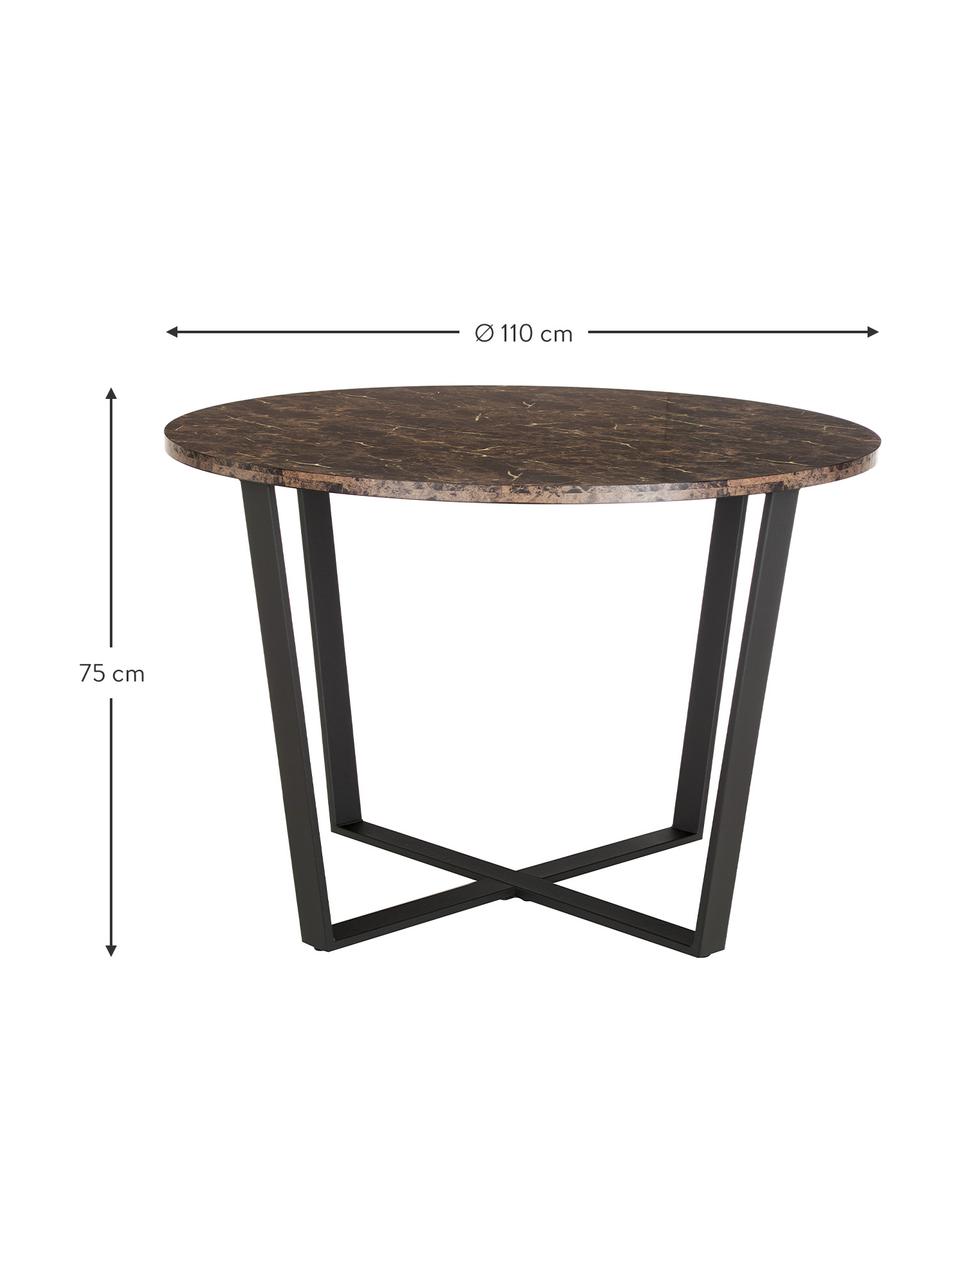 Okrúhly stôl s mramorovým vzhľadom Amble, Ø 110 cm, Hnedá so vzhľadom mramoru, Ø 110 x V 75 cm